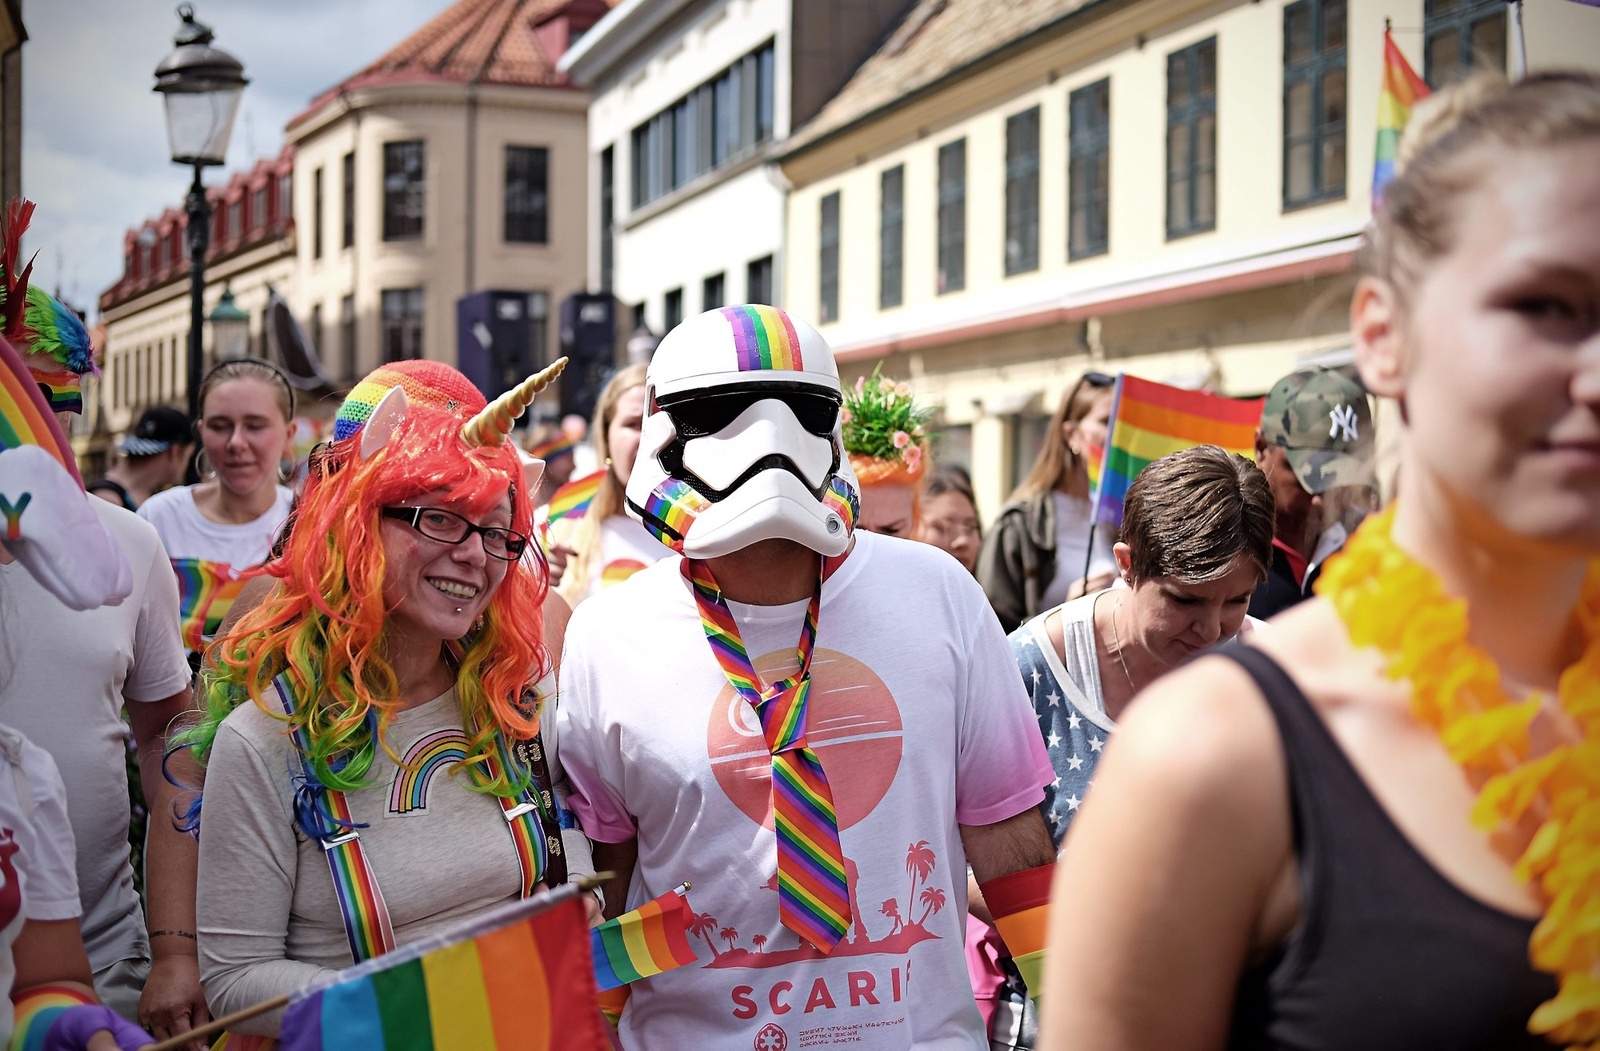 Årets prideparad i Malmö lockade tusentals deltagare.
Foto: Oscar Schau